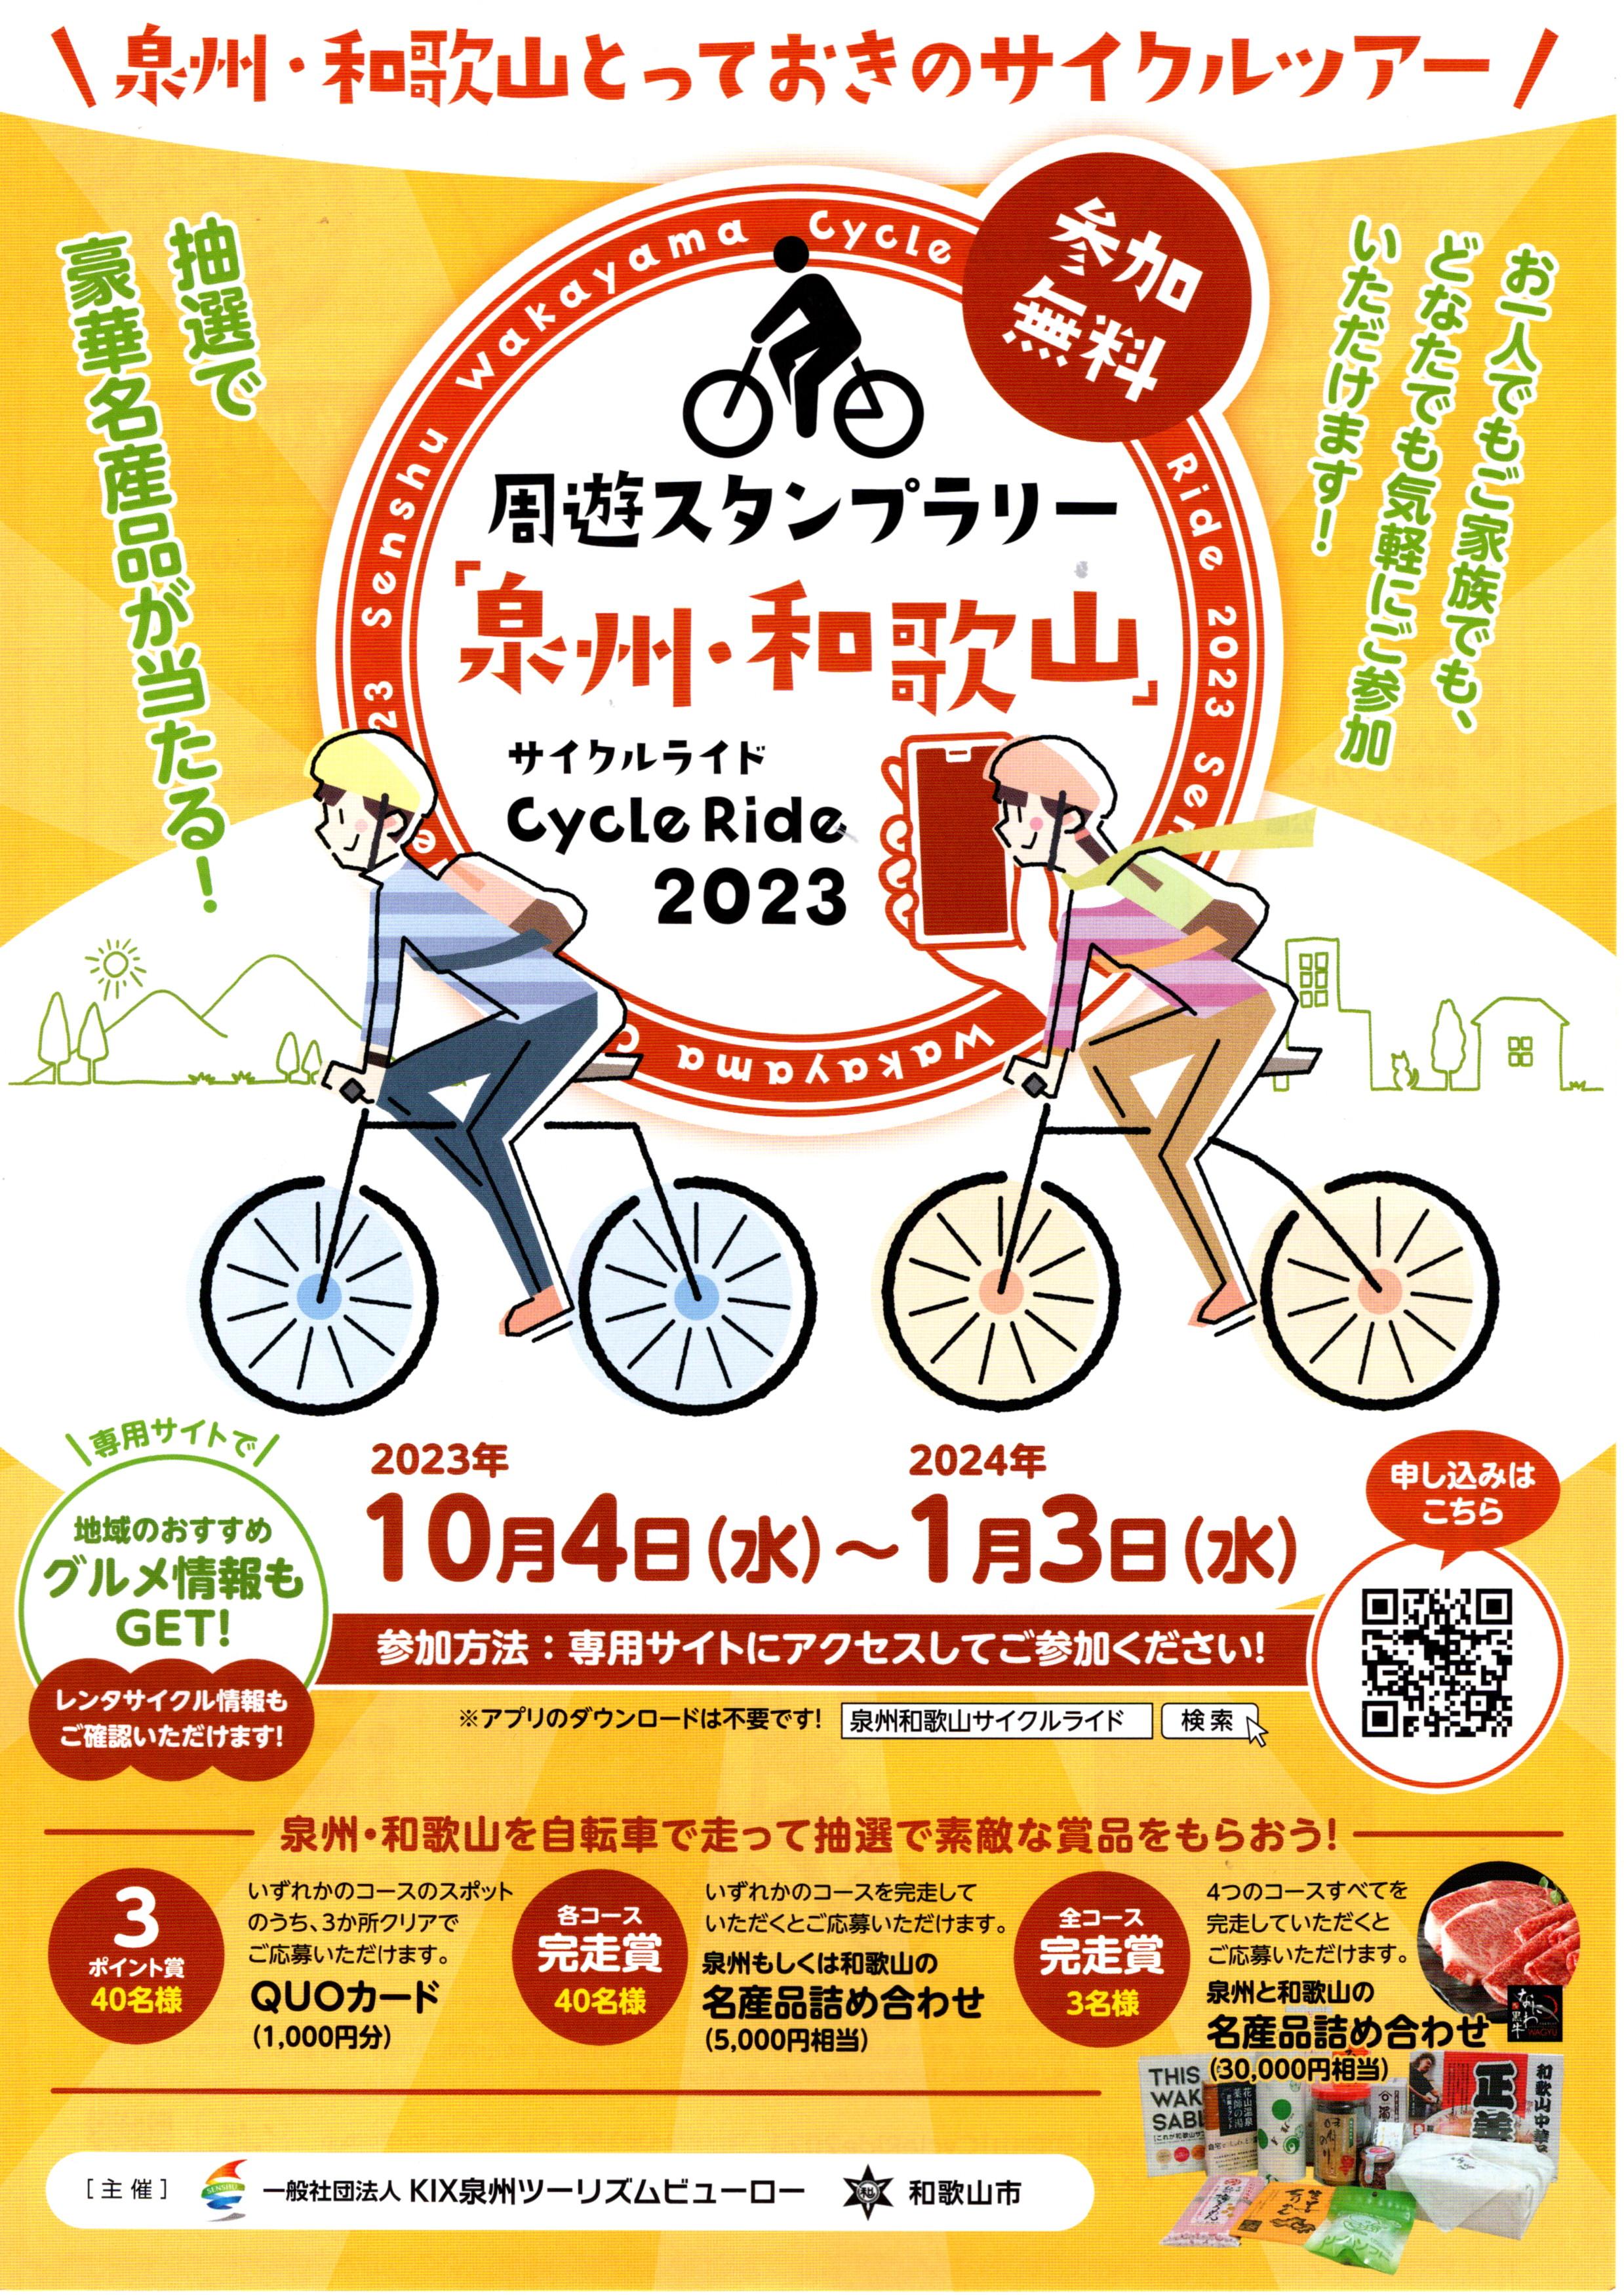 周遊スタンプラリー「泉州・和歌山 CycleRide 2023」